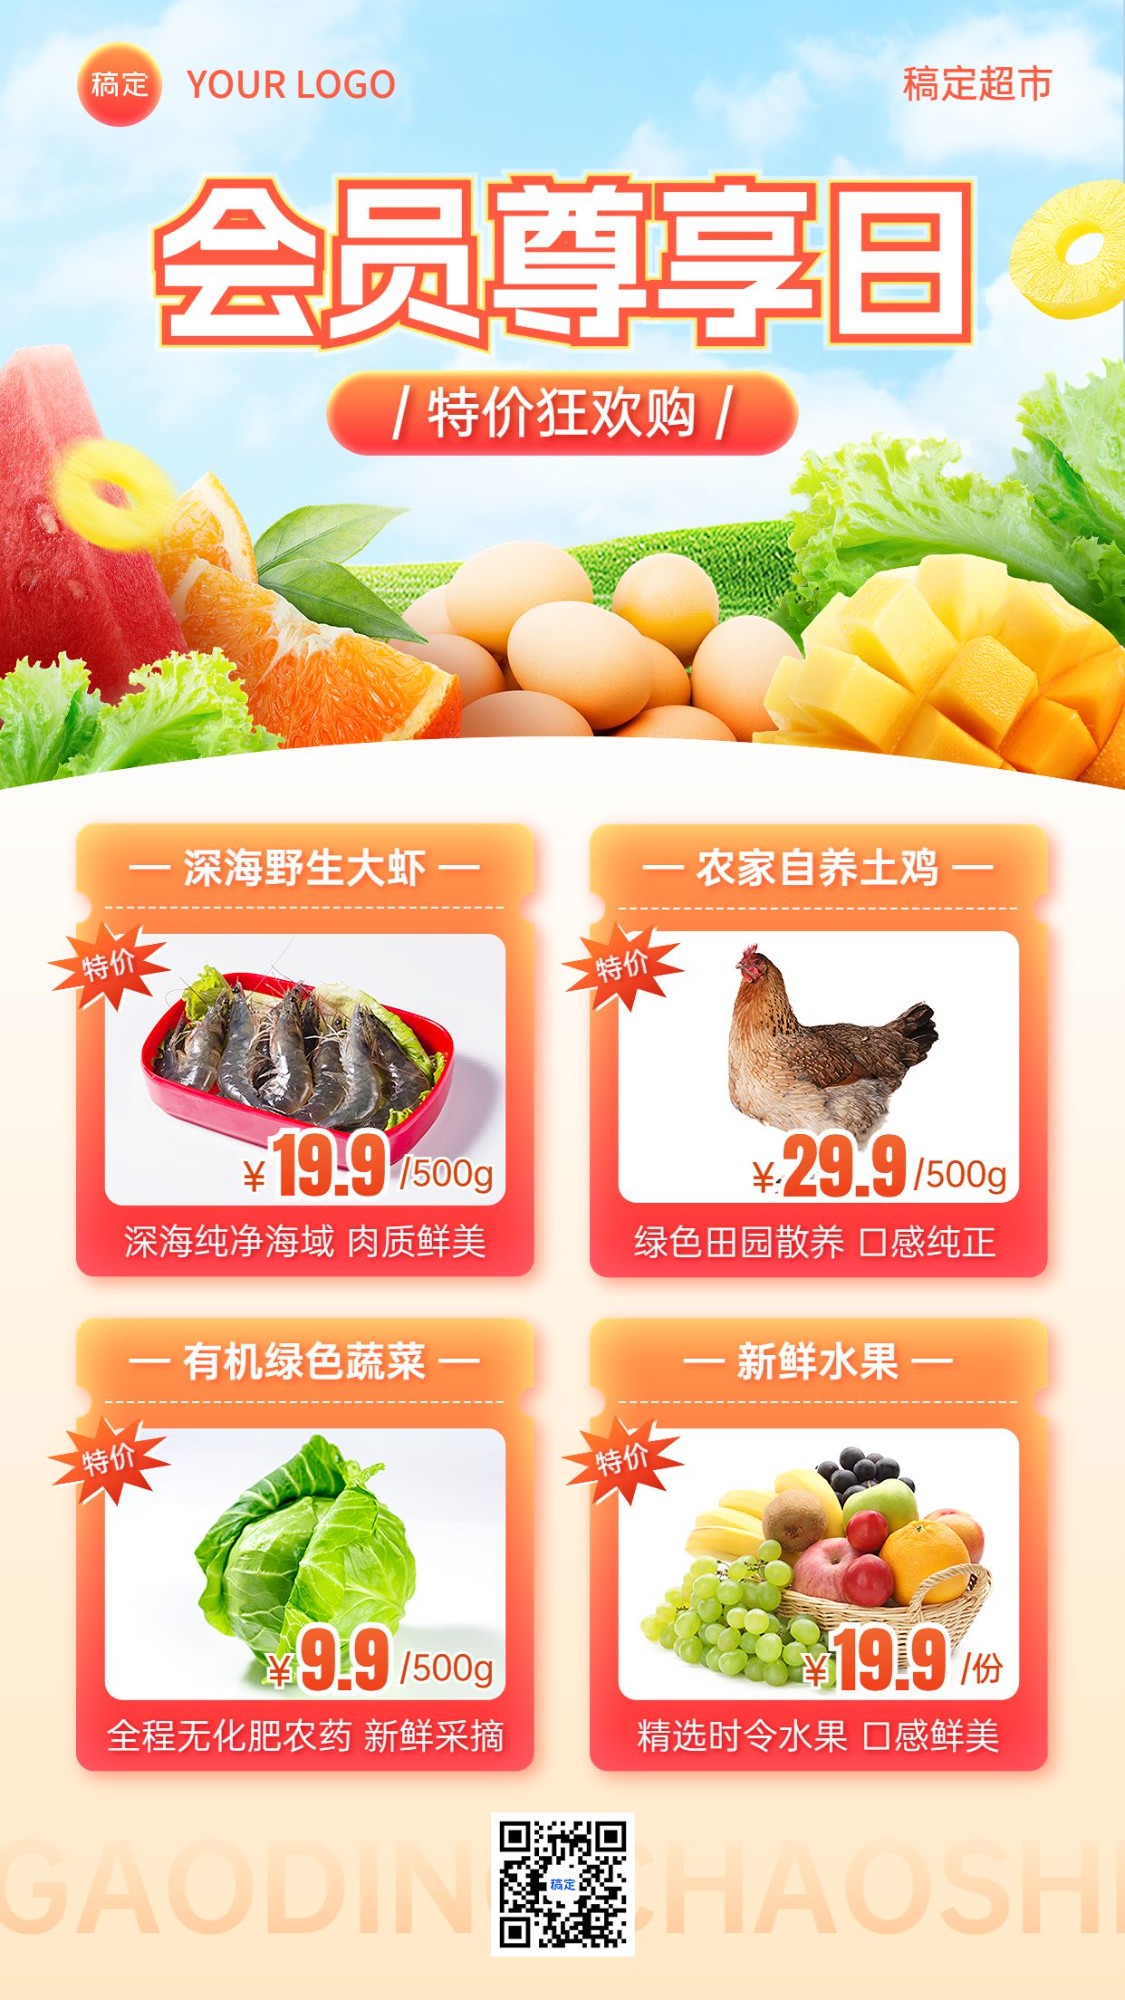 食品生鲜超市便利店多图框会员日营销促销手机海报